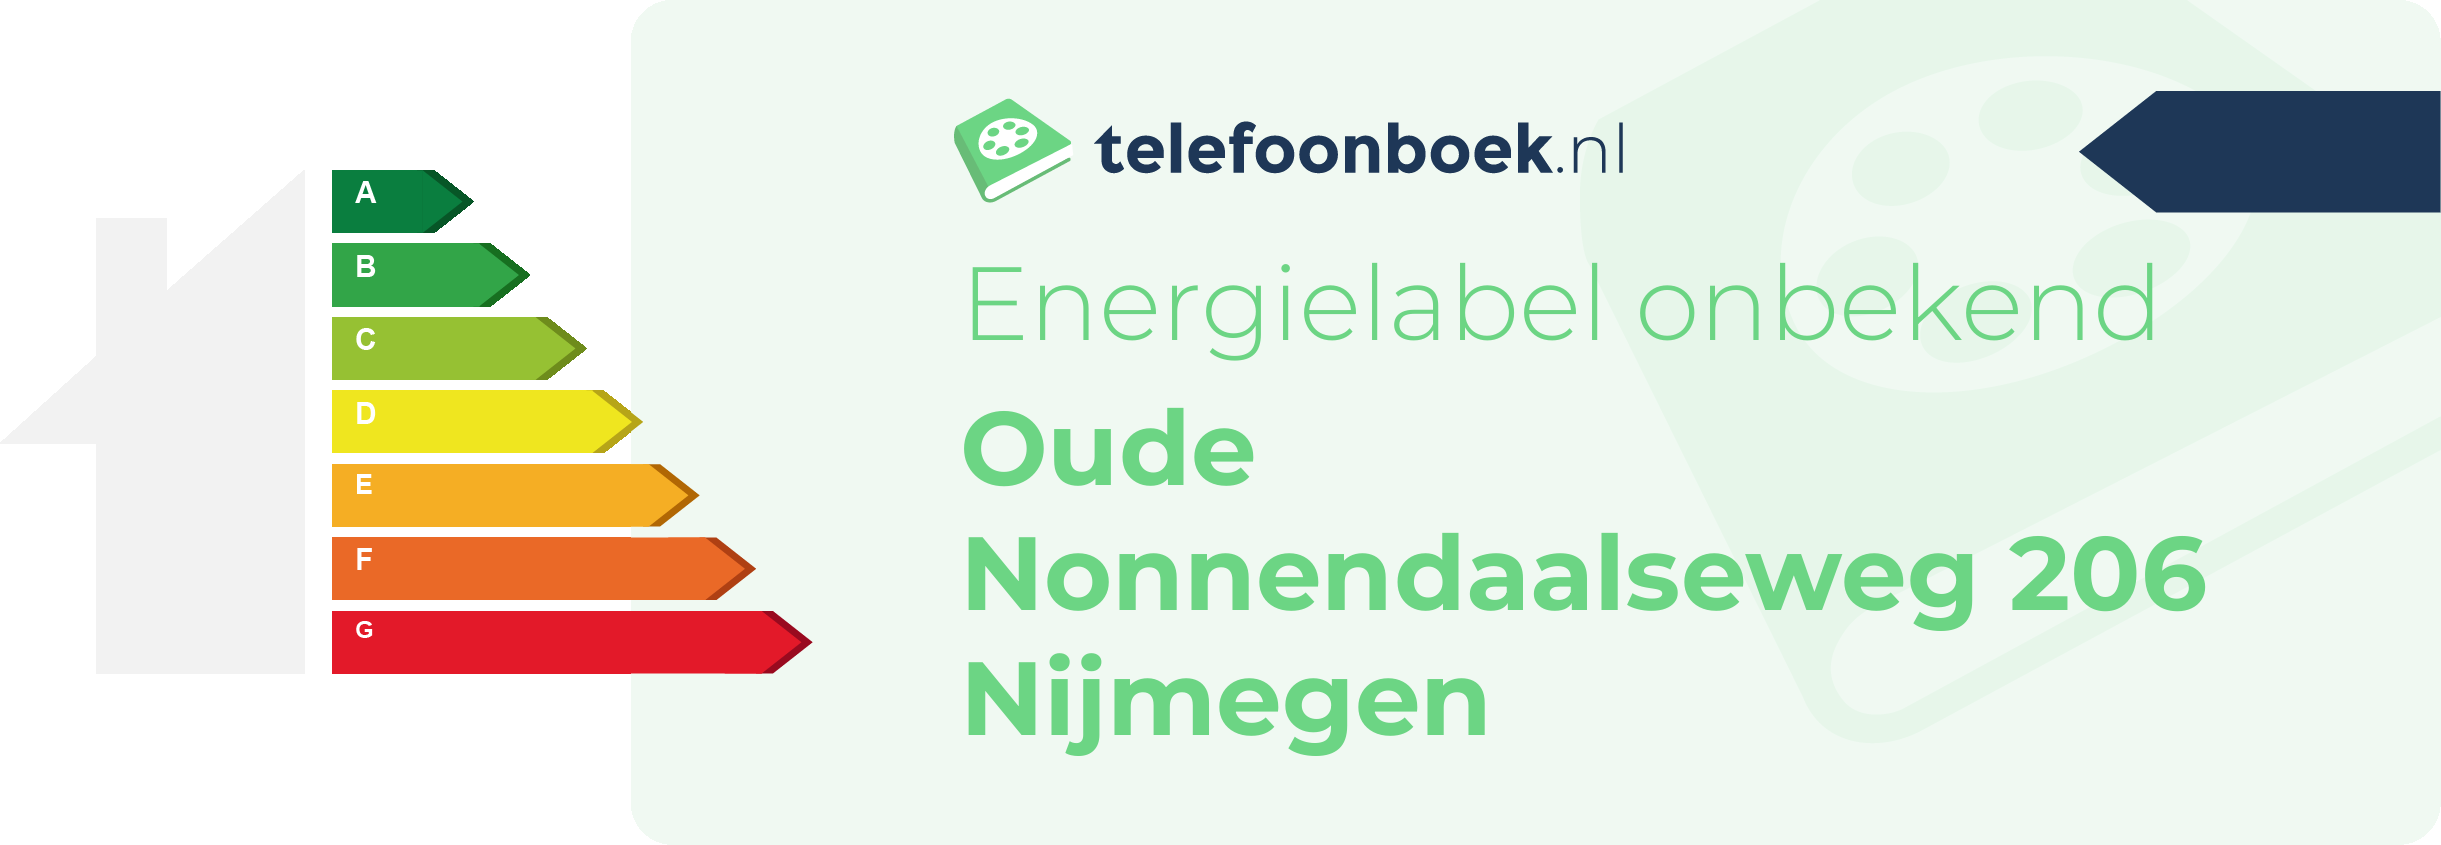 Energielabel Oude Nonnendaalseweg 206 Nijmegen